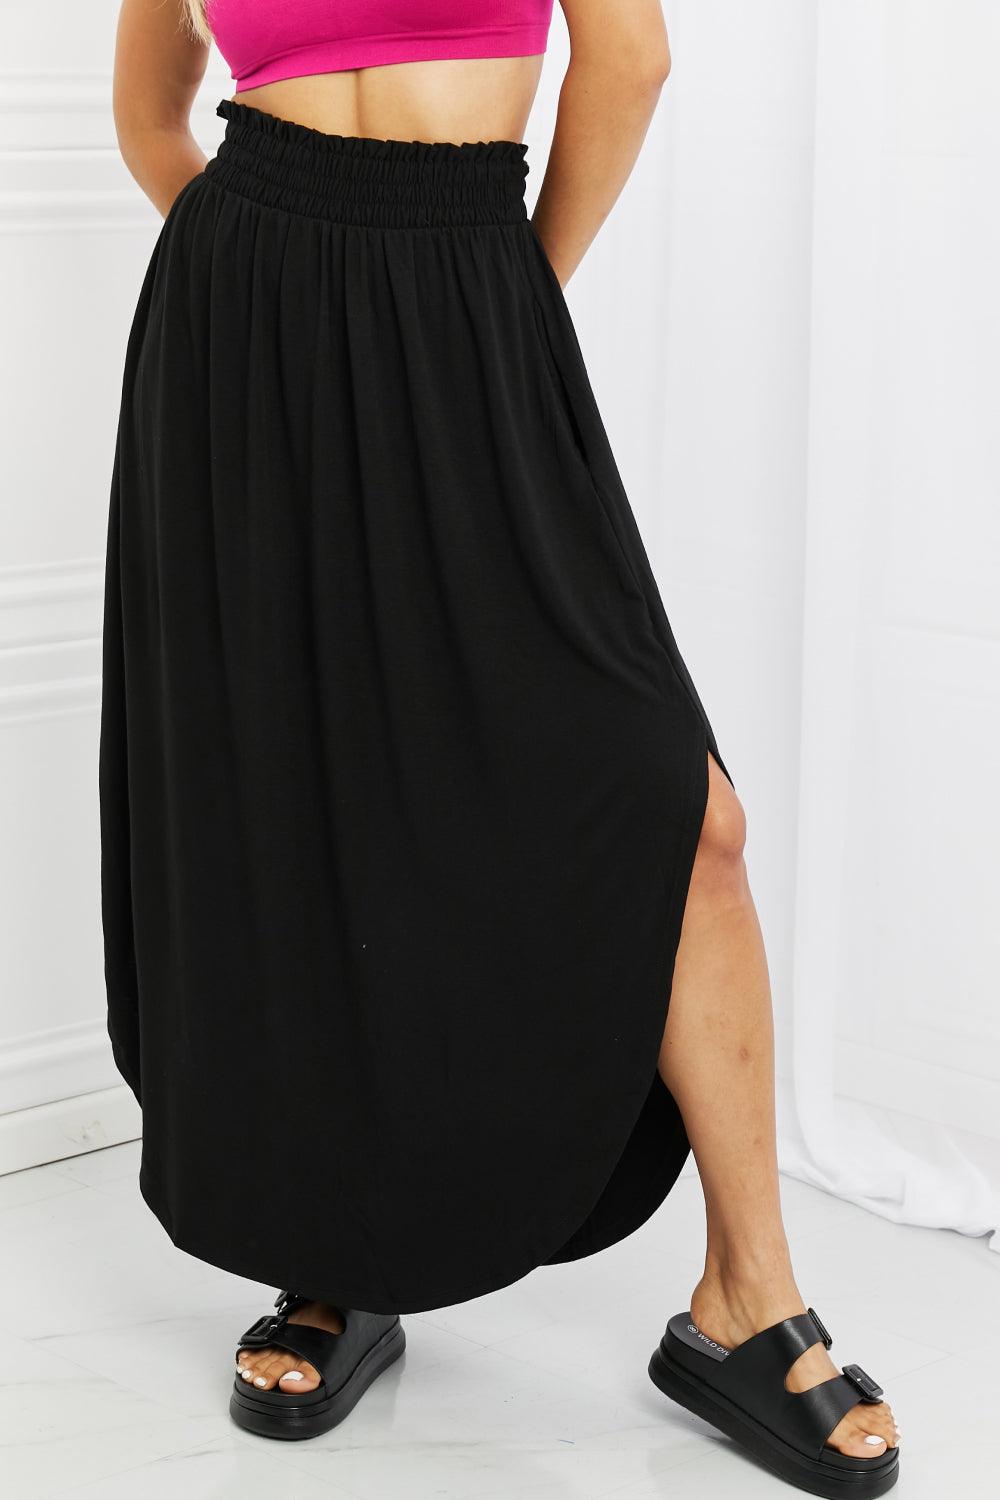 Zenana It's My Time Full Size Side Scoop Scrunch Skirt in Black - The Fiery Jasmine